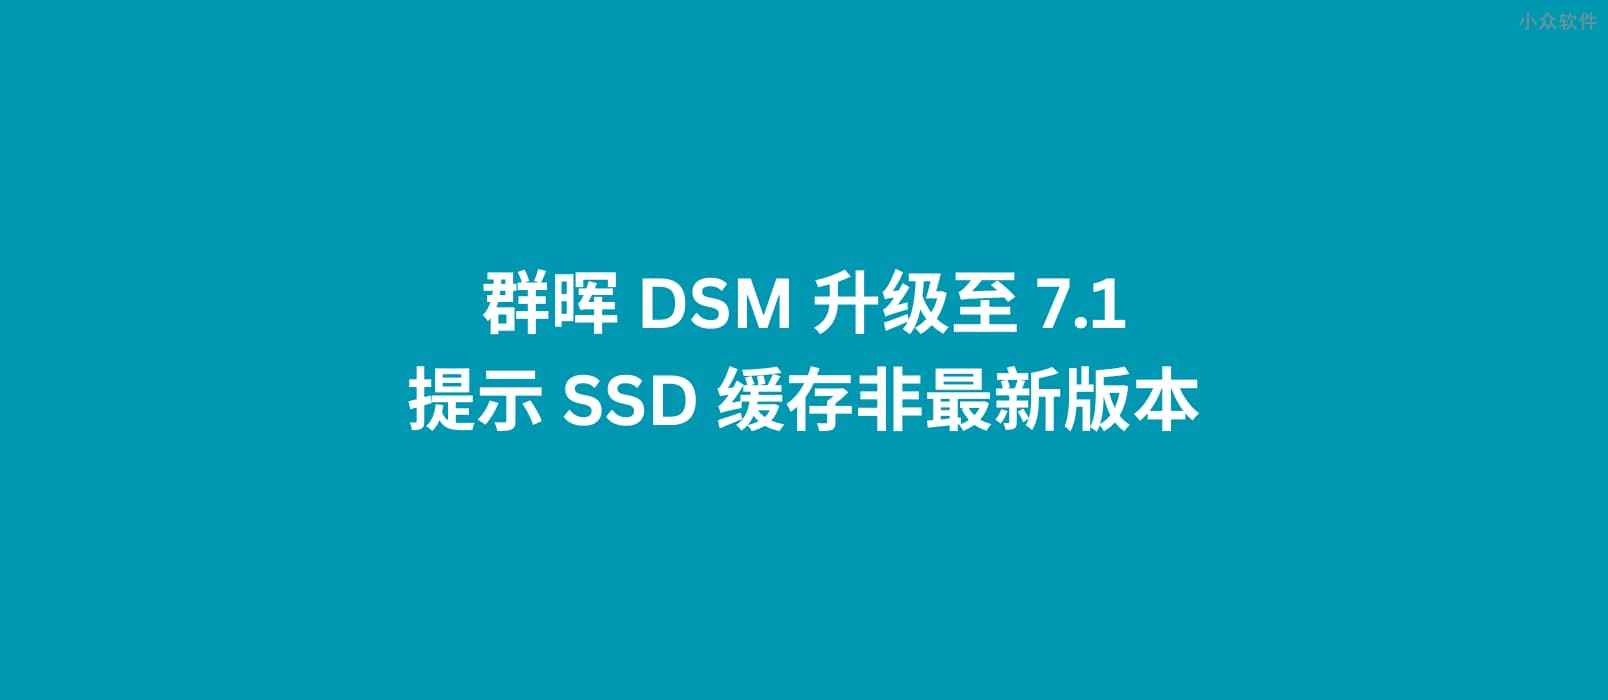 群晖 DSM 升级至 7.1，提示 SSD 缓存非最新版本